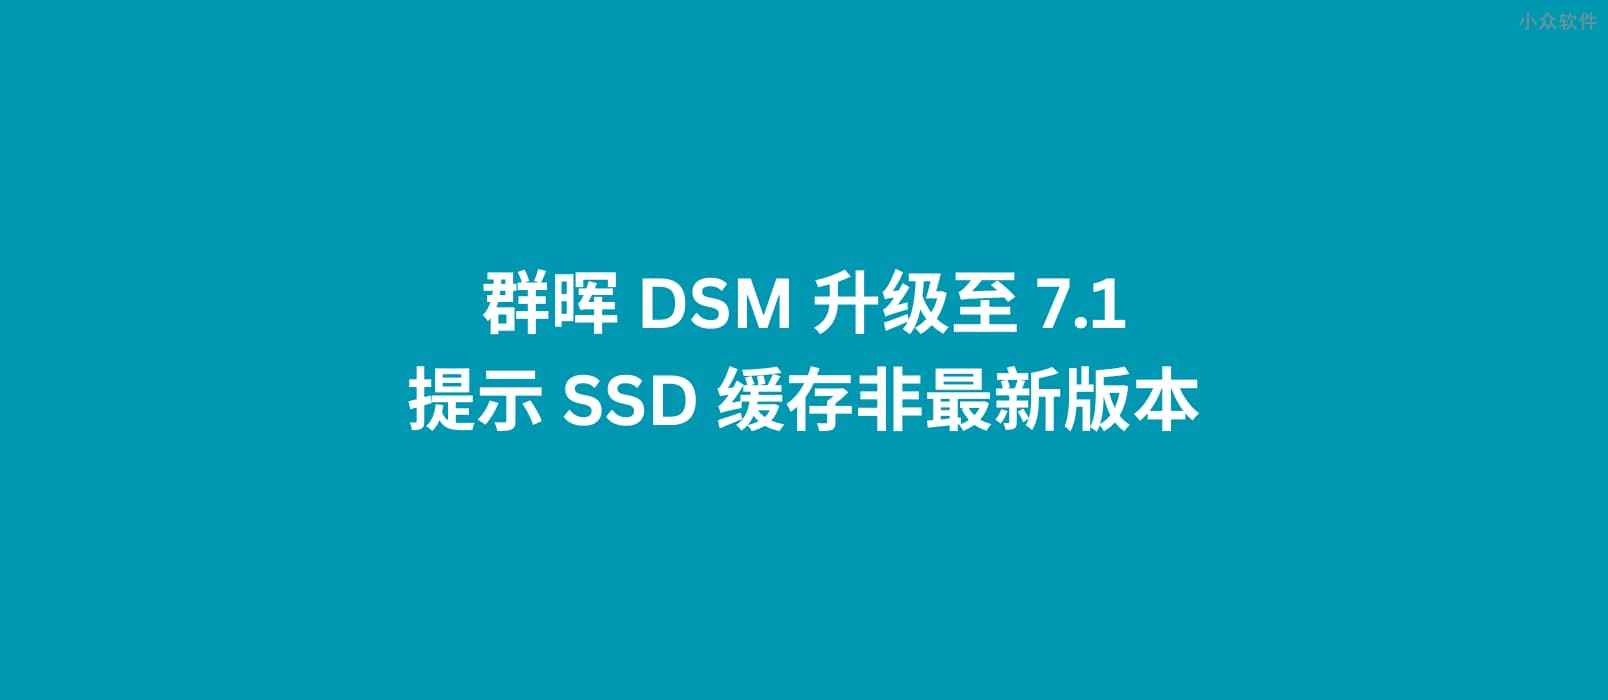 群晖 DSM 升级至 7.1，提示 SSD 缓存非最新版本